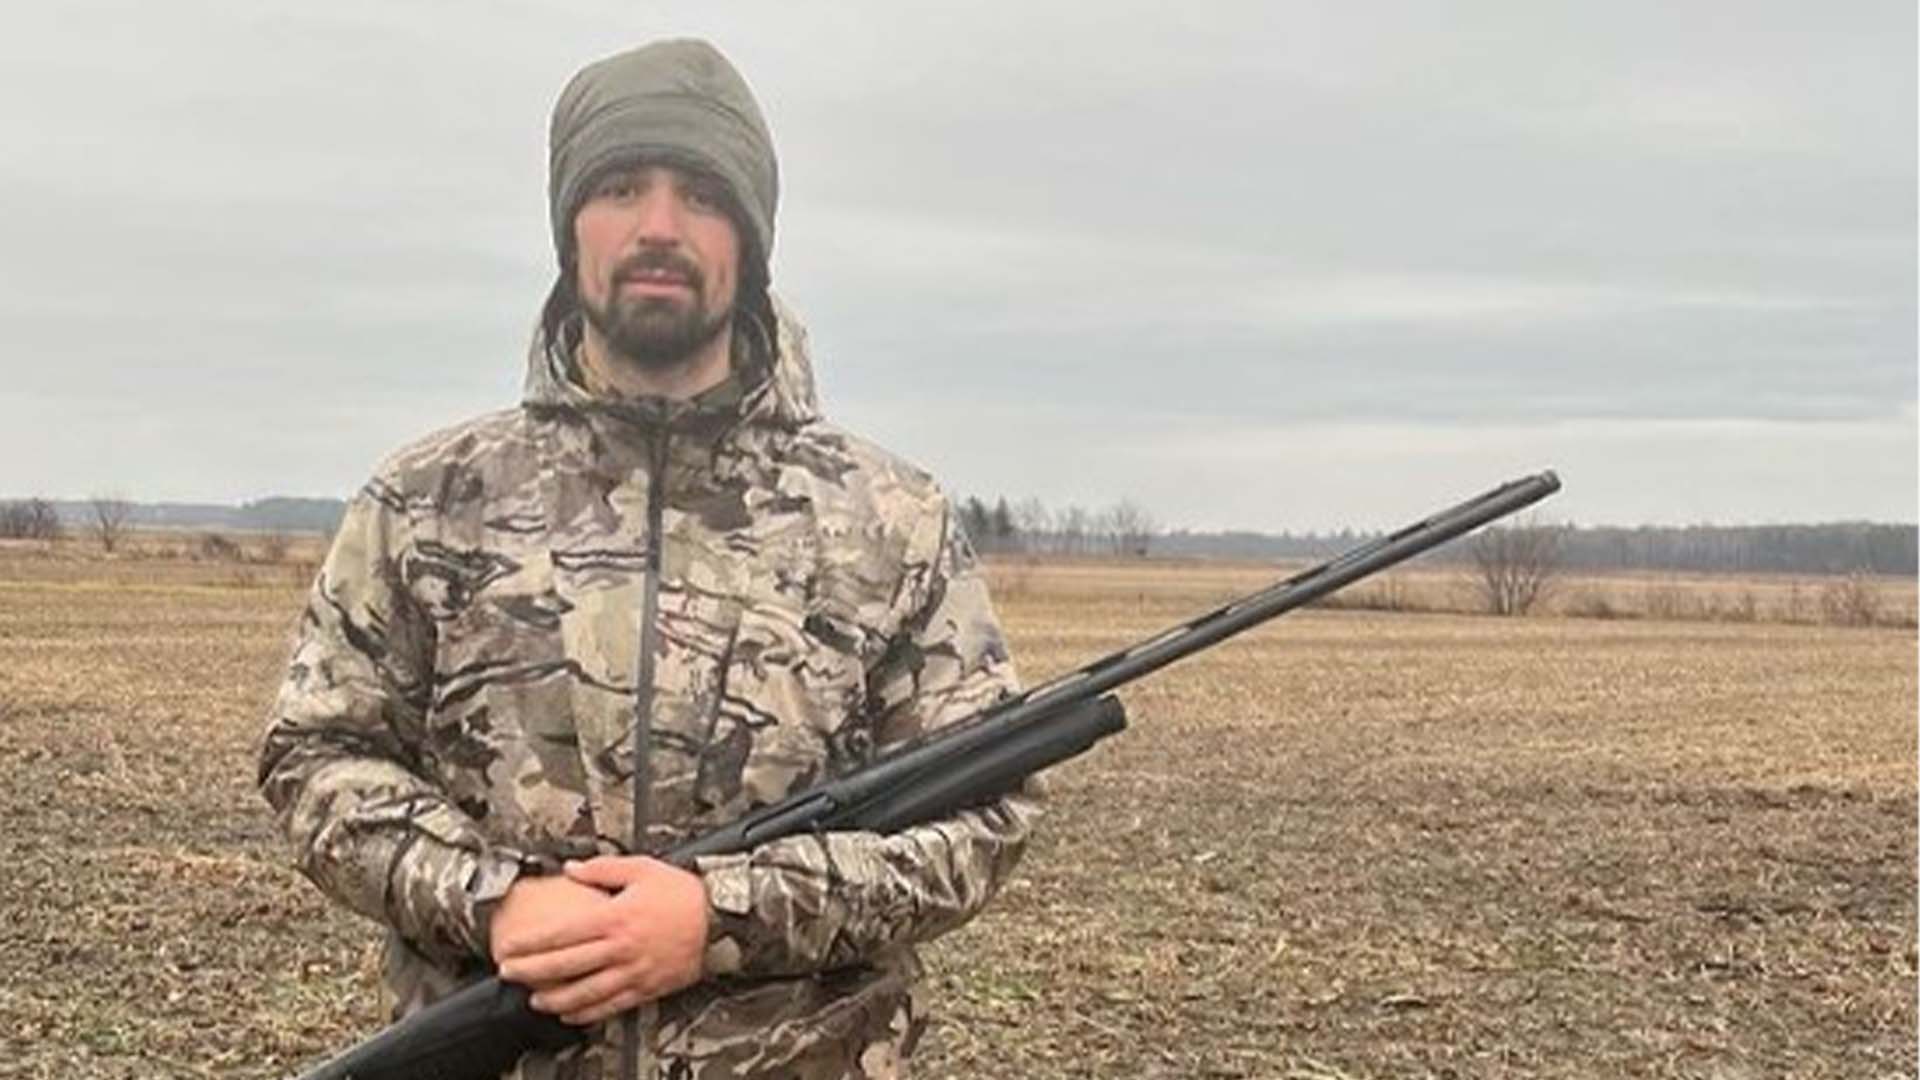 La sortie de Carey Price a été remarquée. «Ce que Justin Trudeau essaie de faire est injuste. Je soutiens la CCDAF (Coalition canadienne pour les droits des armes à feu) pour garder mes outils de chasse», a publié le gardien de but dans les médias sociaux, avec une photo de lui tenant un fusil.